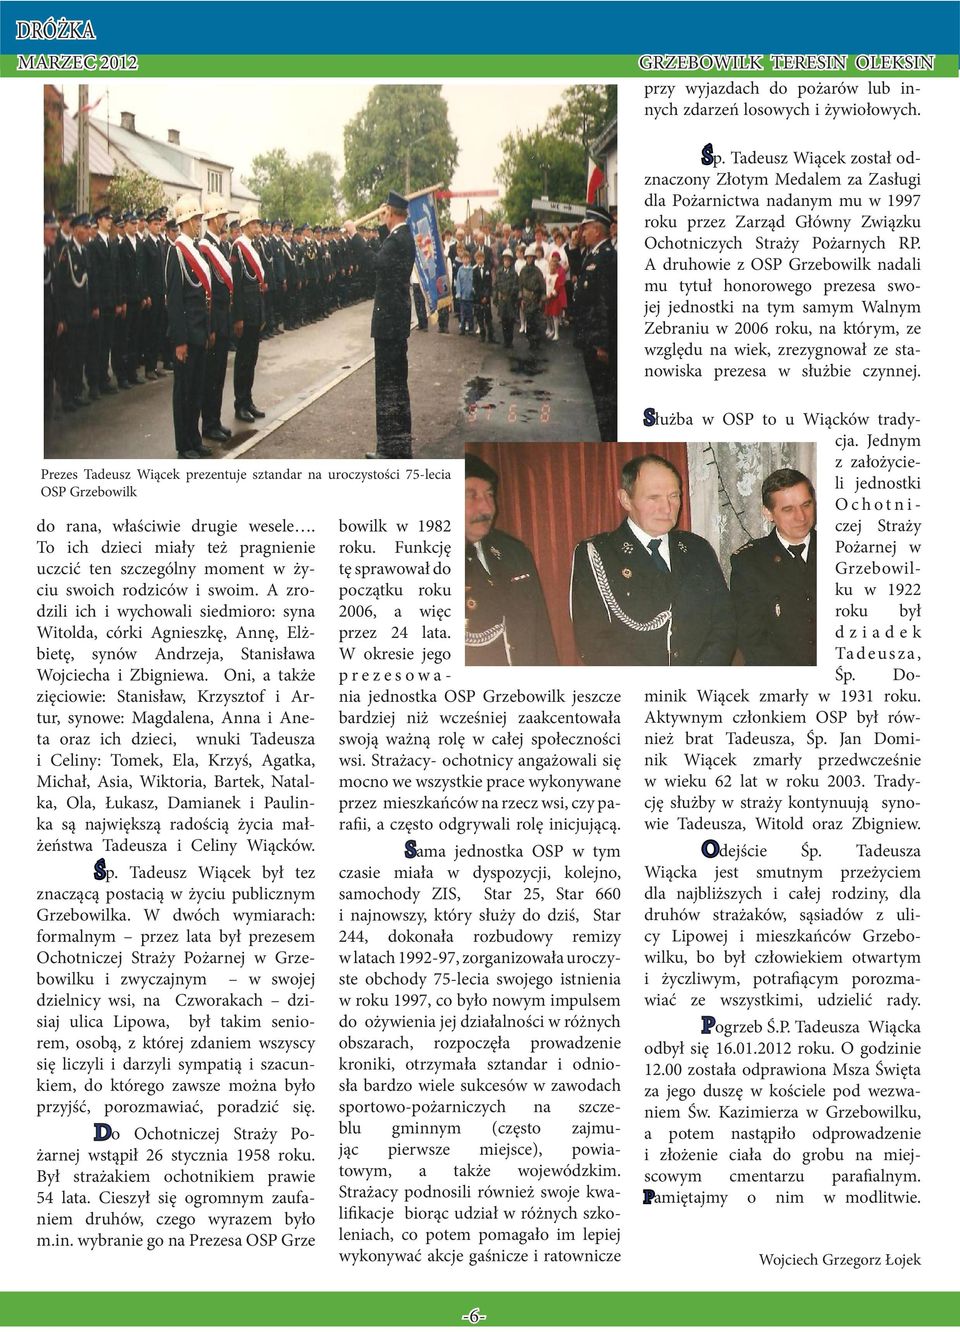 A druhowie z OSP Grzebowilk nadali mu tytuł honorowego prezesa swojej jednostki na tym samym Walnym Zebraniu w 2006 roku, na którym, ze względu na wiek, zrezygnował ze stanowiska prezesa w służbie